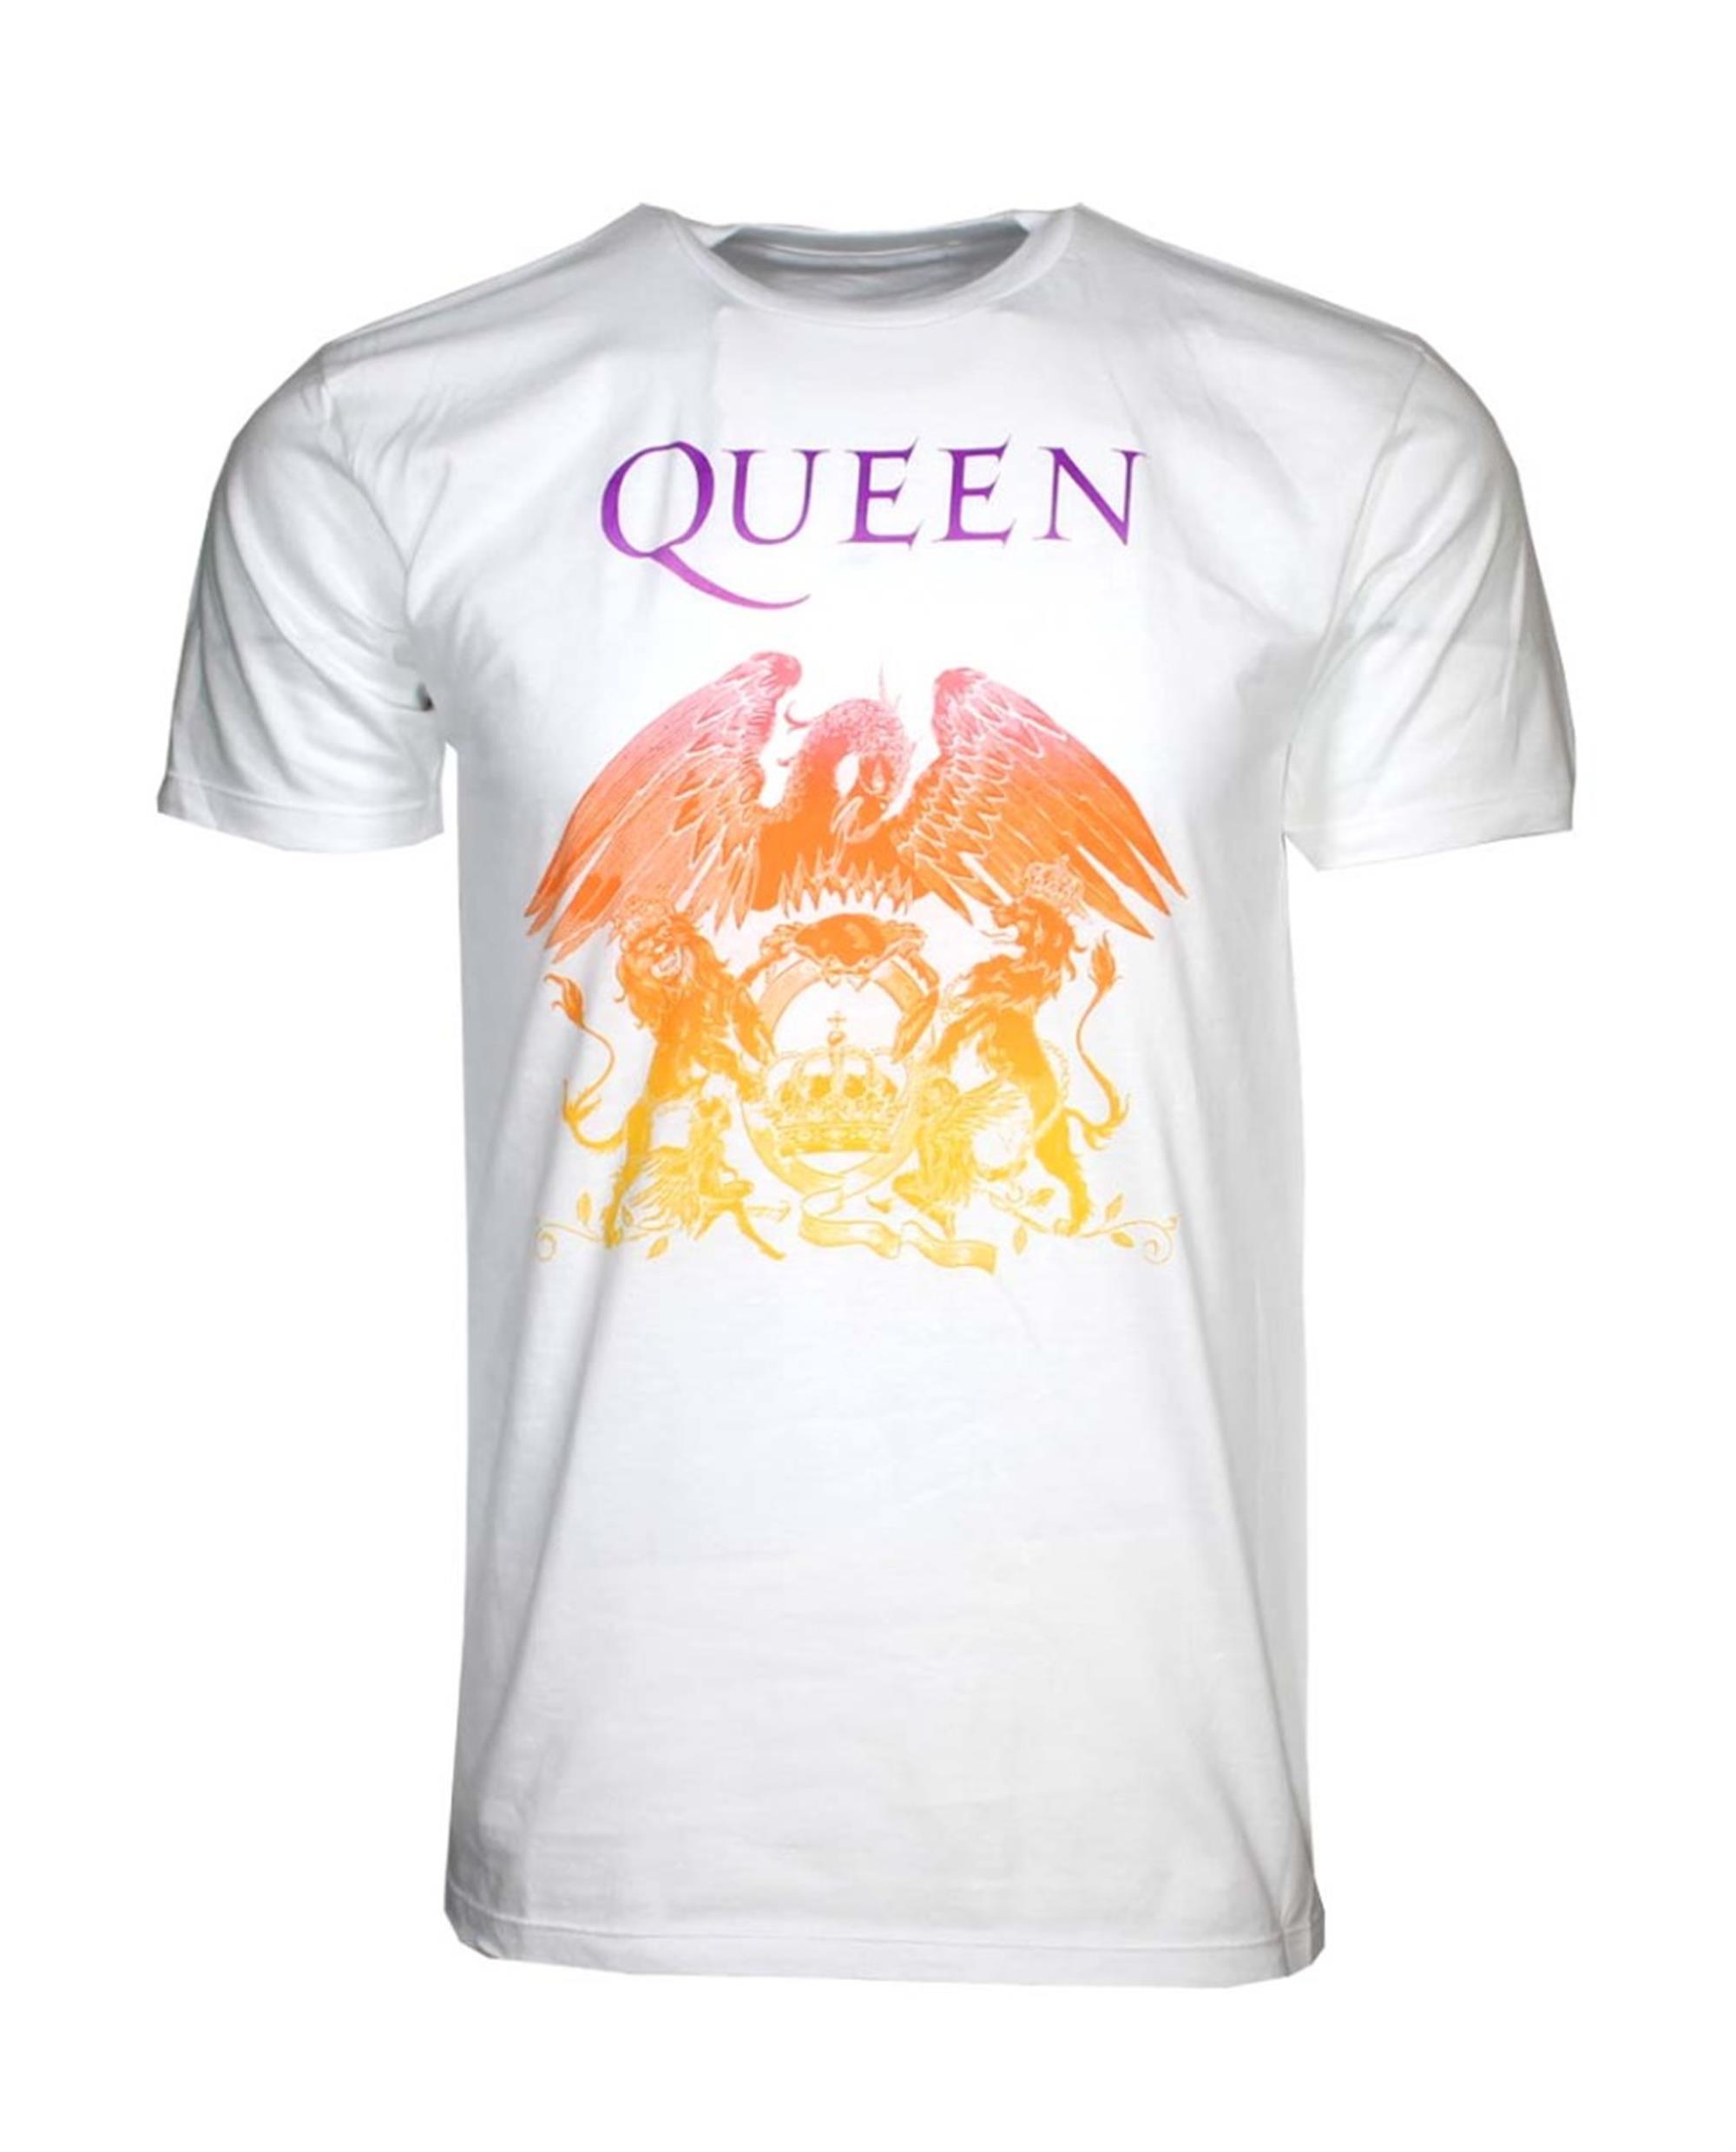 Queen Crest White T-Shirt